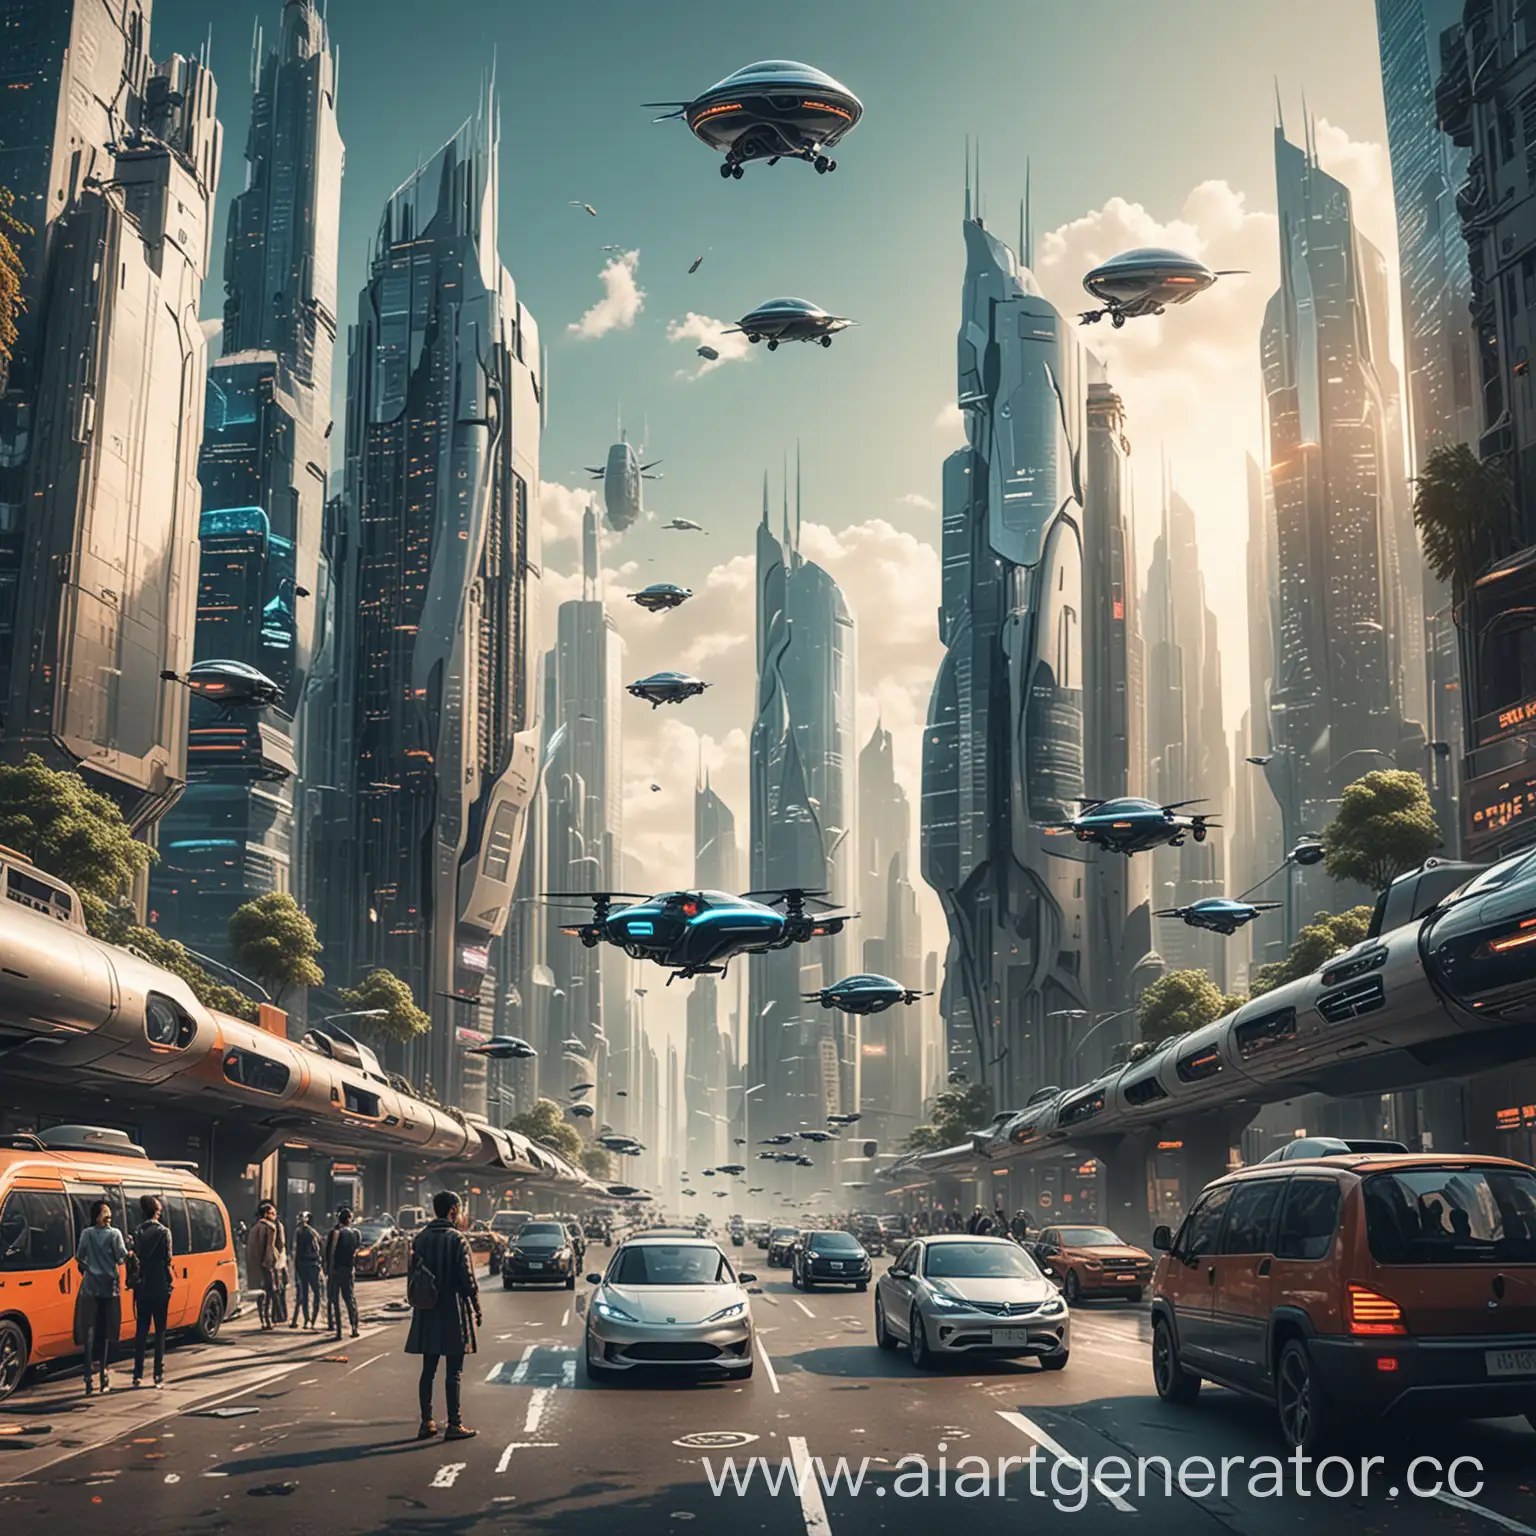 Изображение футуристического города с небоскребами и летающими автомобилями на заднем плане. На переднем плане группа людей, использующих различные устройства с поддержкой ИИ, такие как смартфоны, планшеты и очки дополненной реальности. Все смотрят в одном направлении, в будущее.